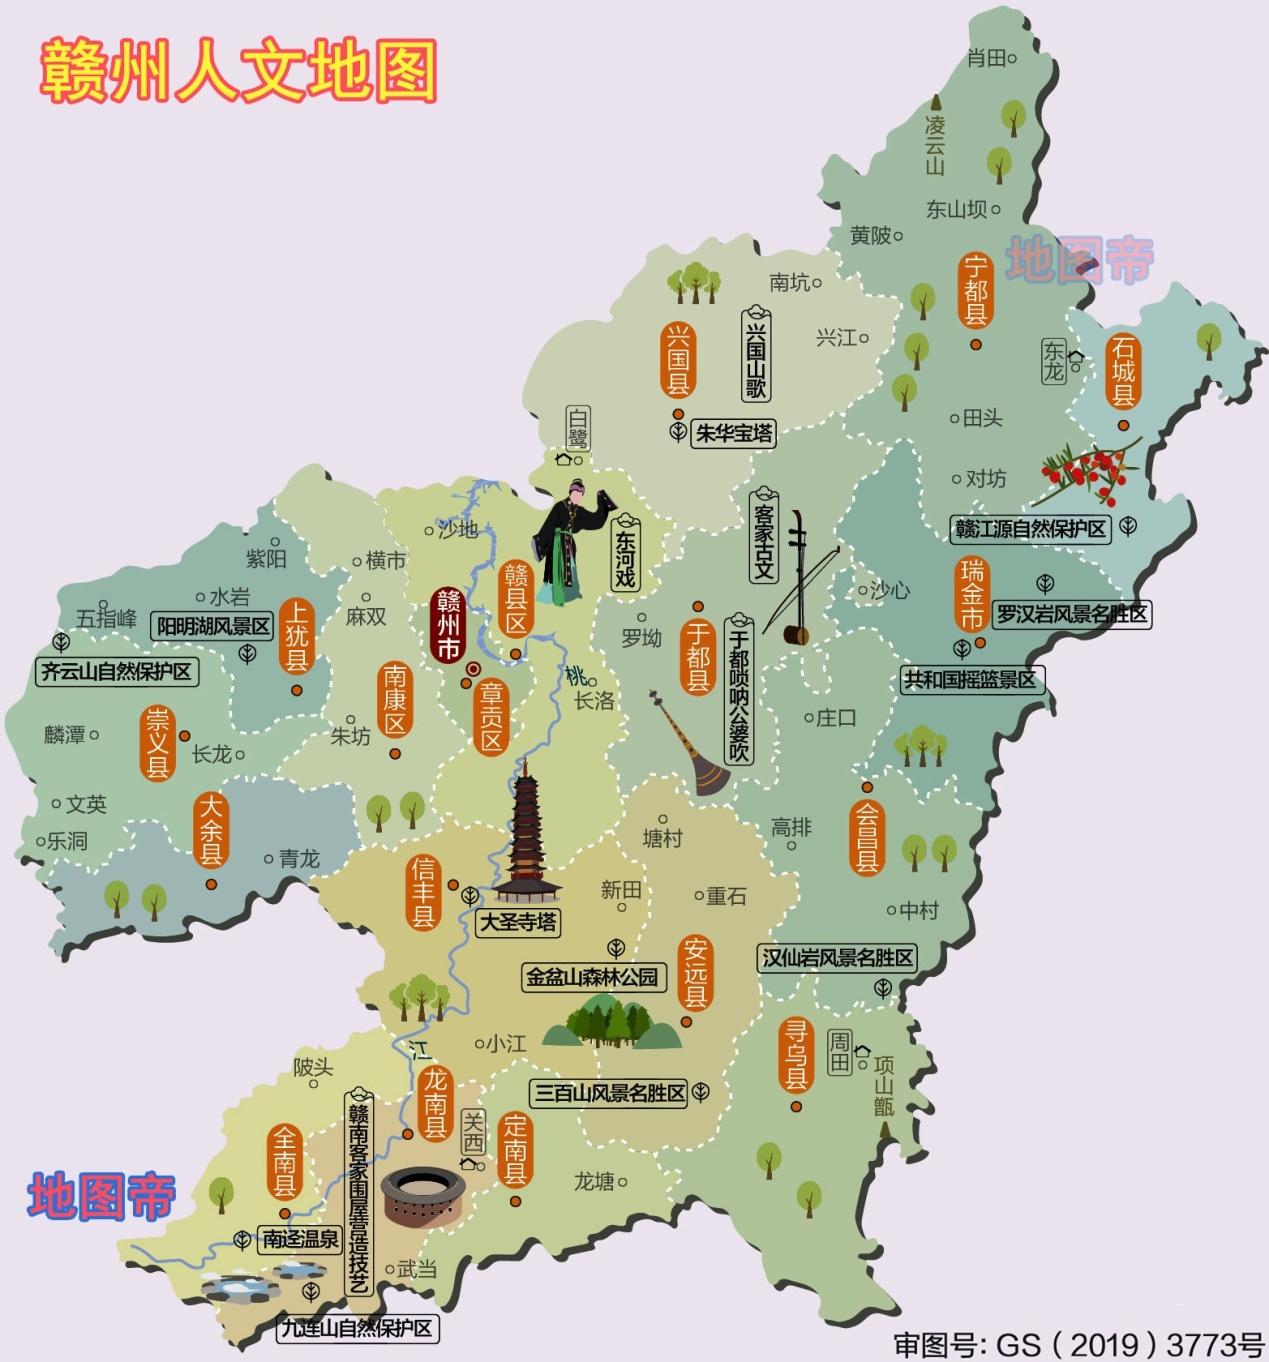 江西省旅游地图|江西省旅游地图全图高清版大图片|旅途风景图片网|www.visacits.com